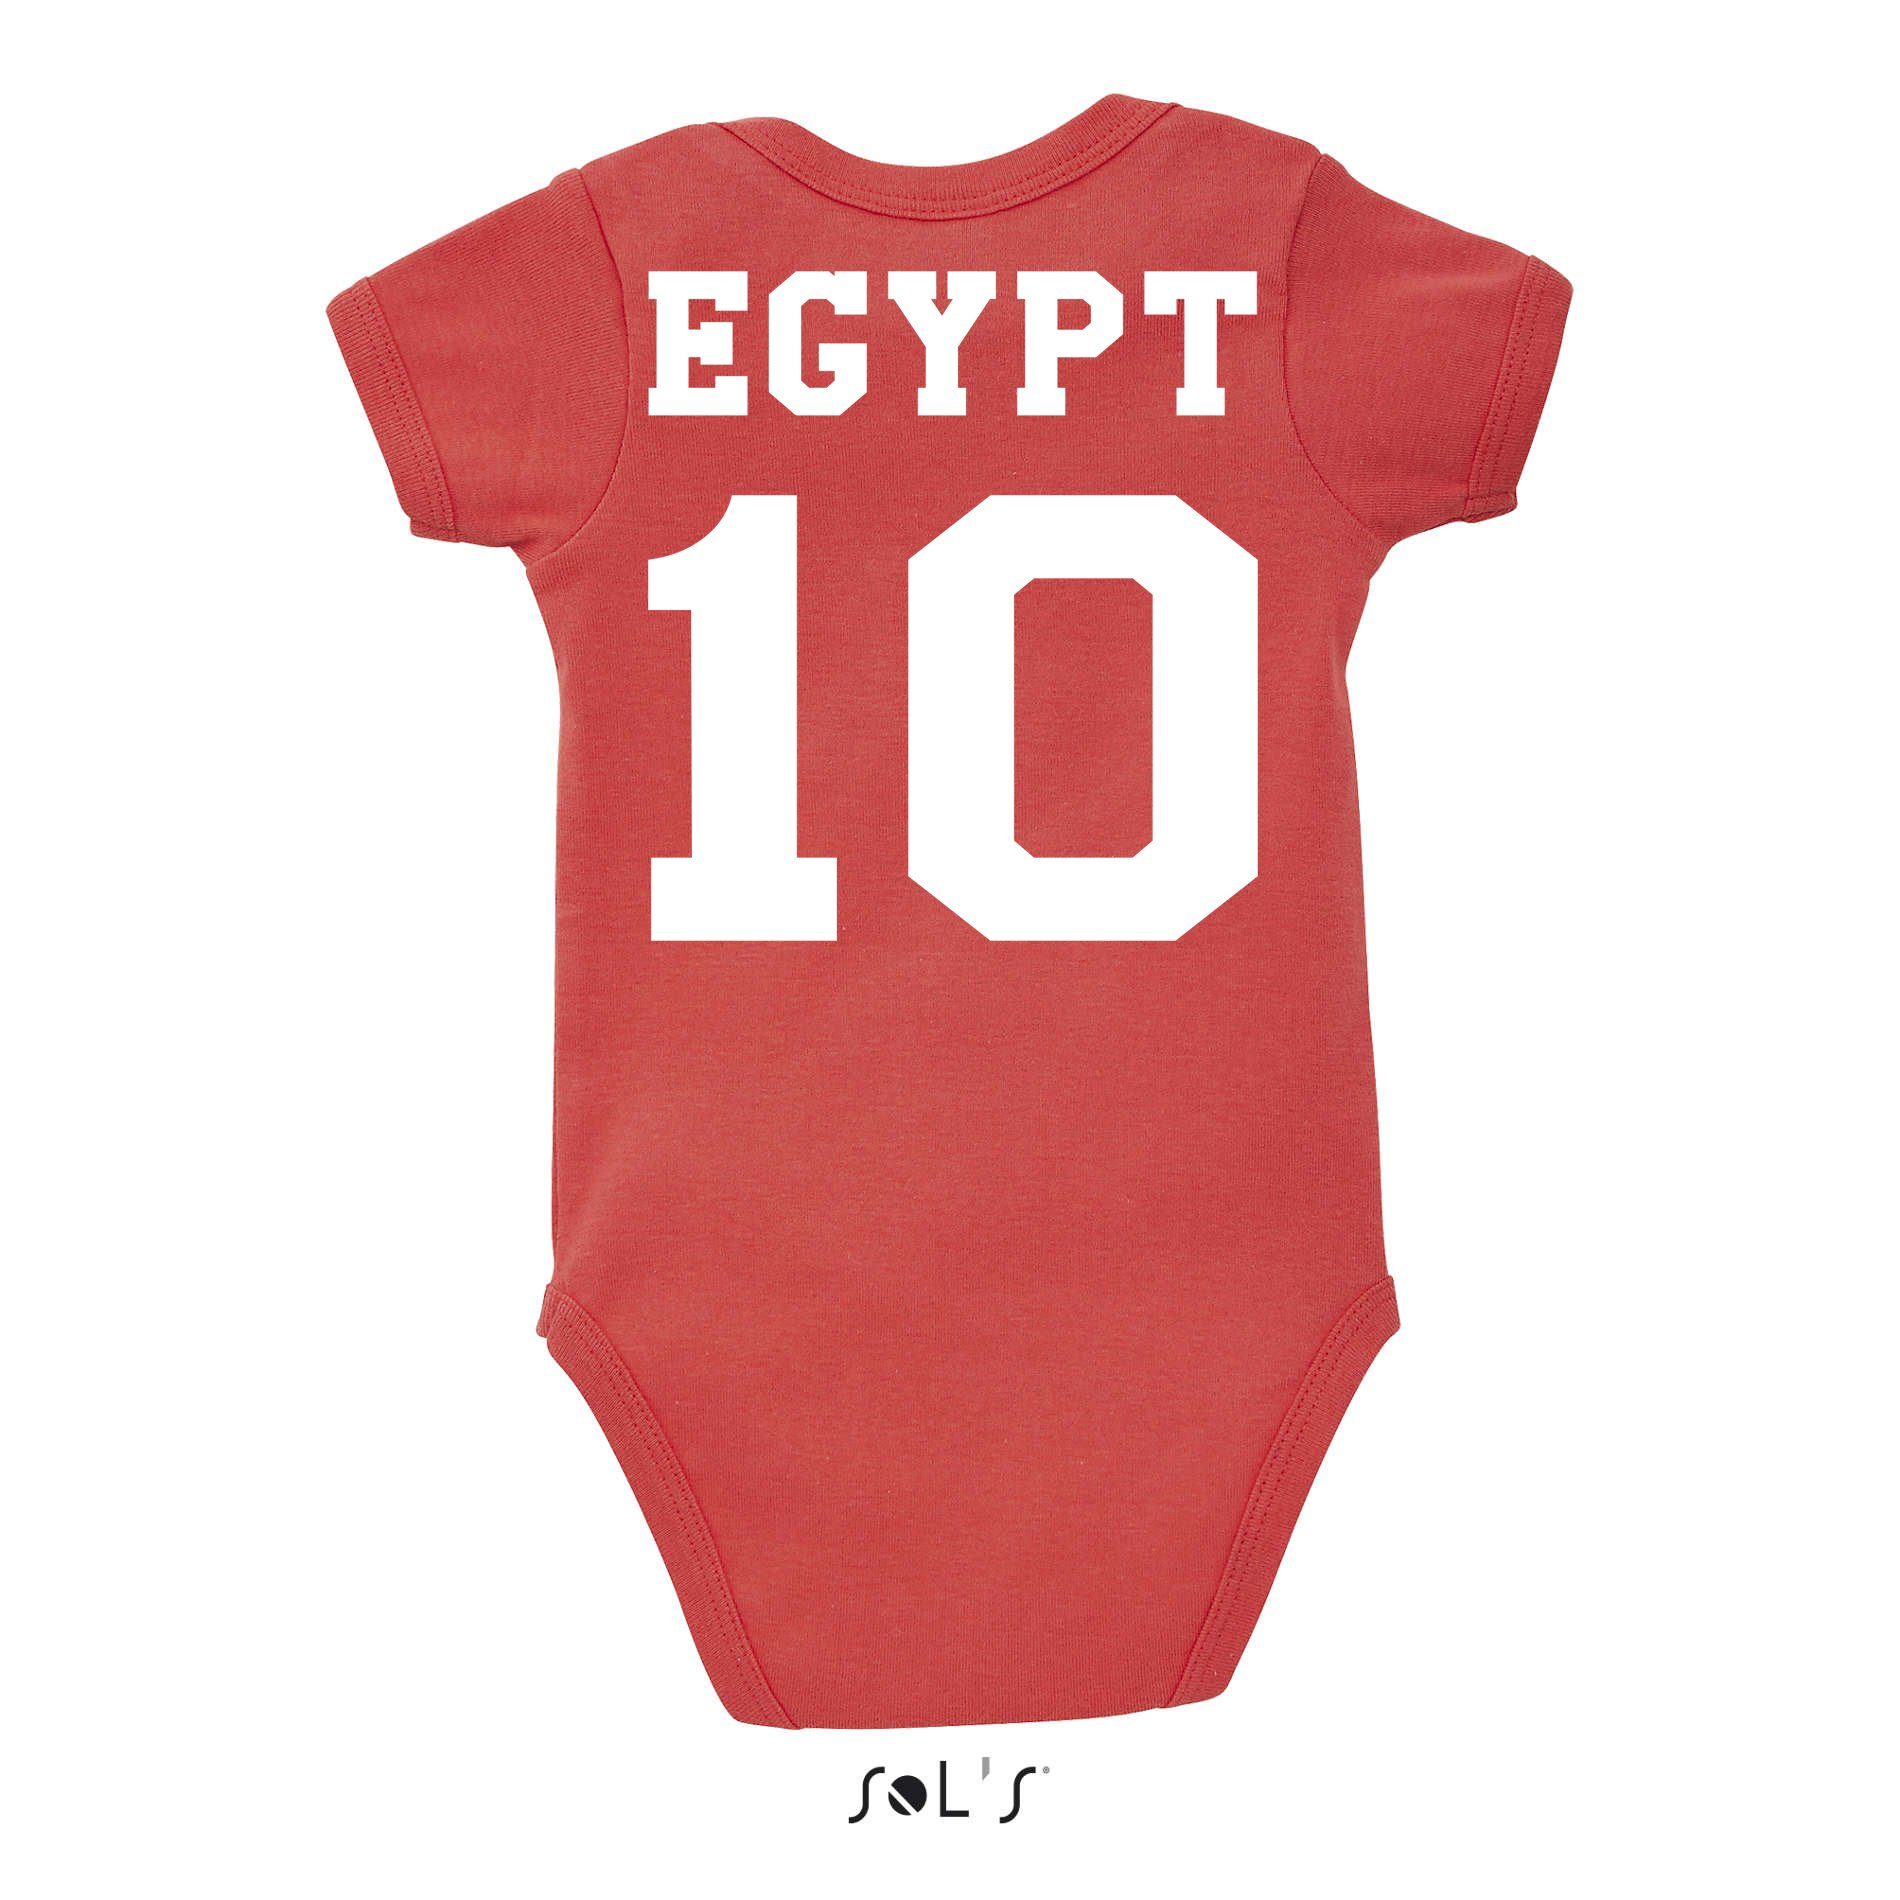 Blondie & Brownie Strampler Kinder Meister Trikot Cup WM Afrika Baby Egypt Fußball Sport Ägypten